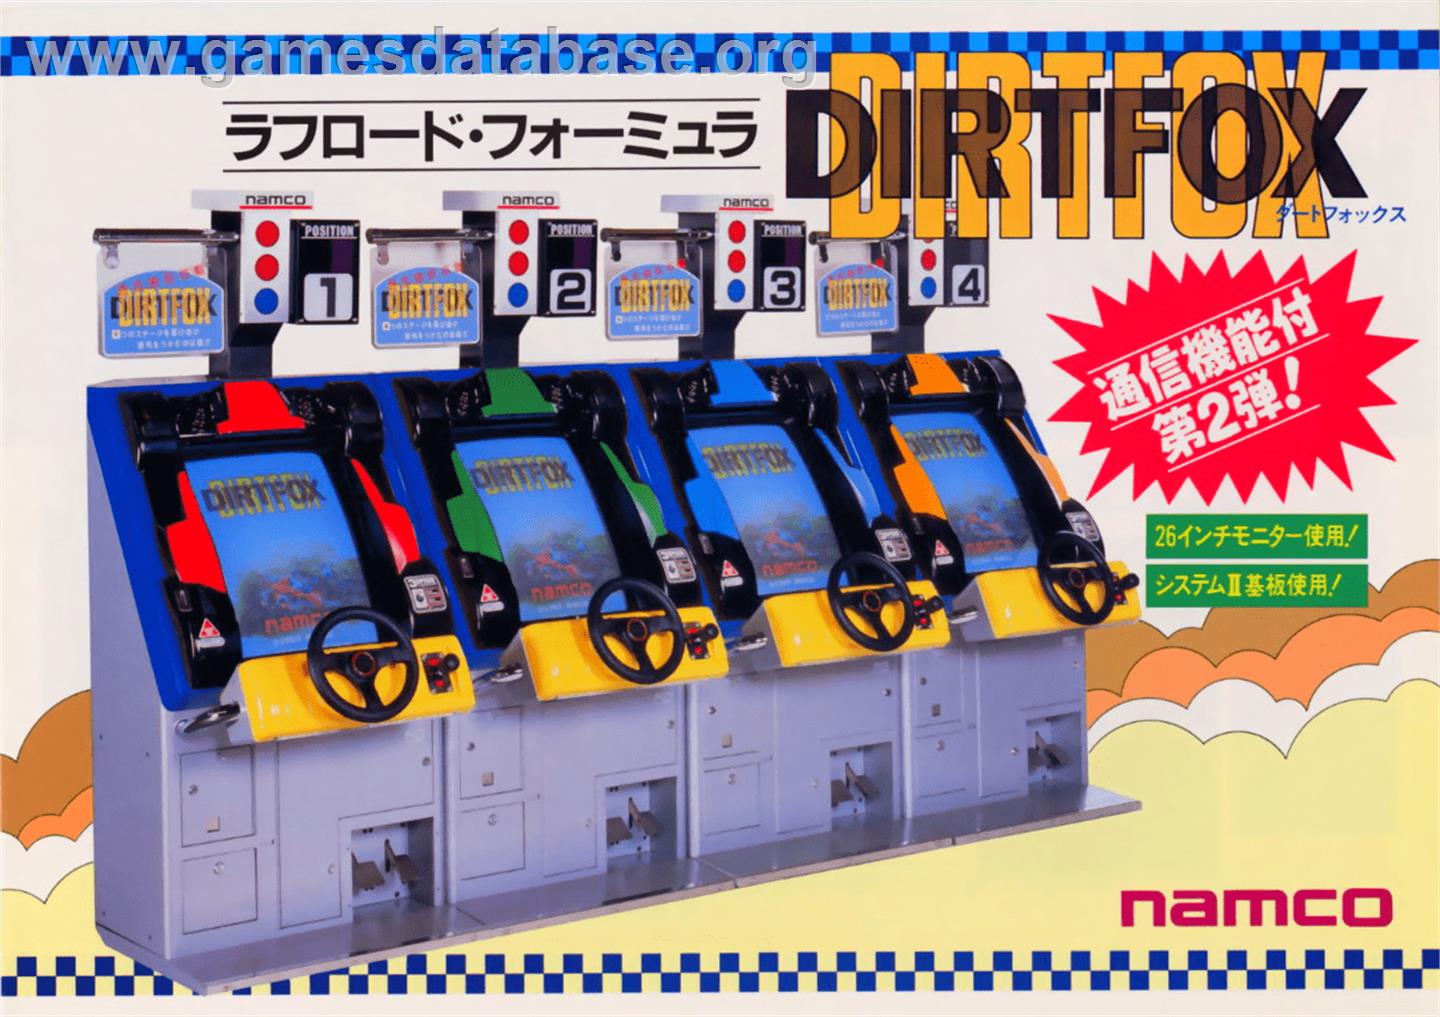 Dirt Fox - Arcade - Artwork - Advert